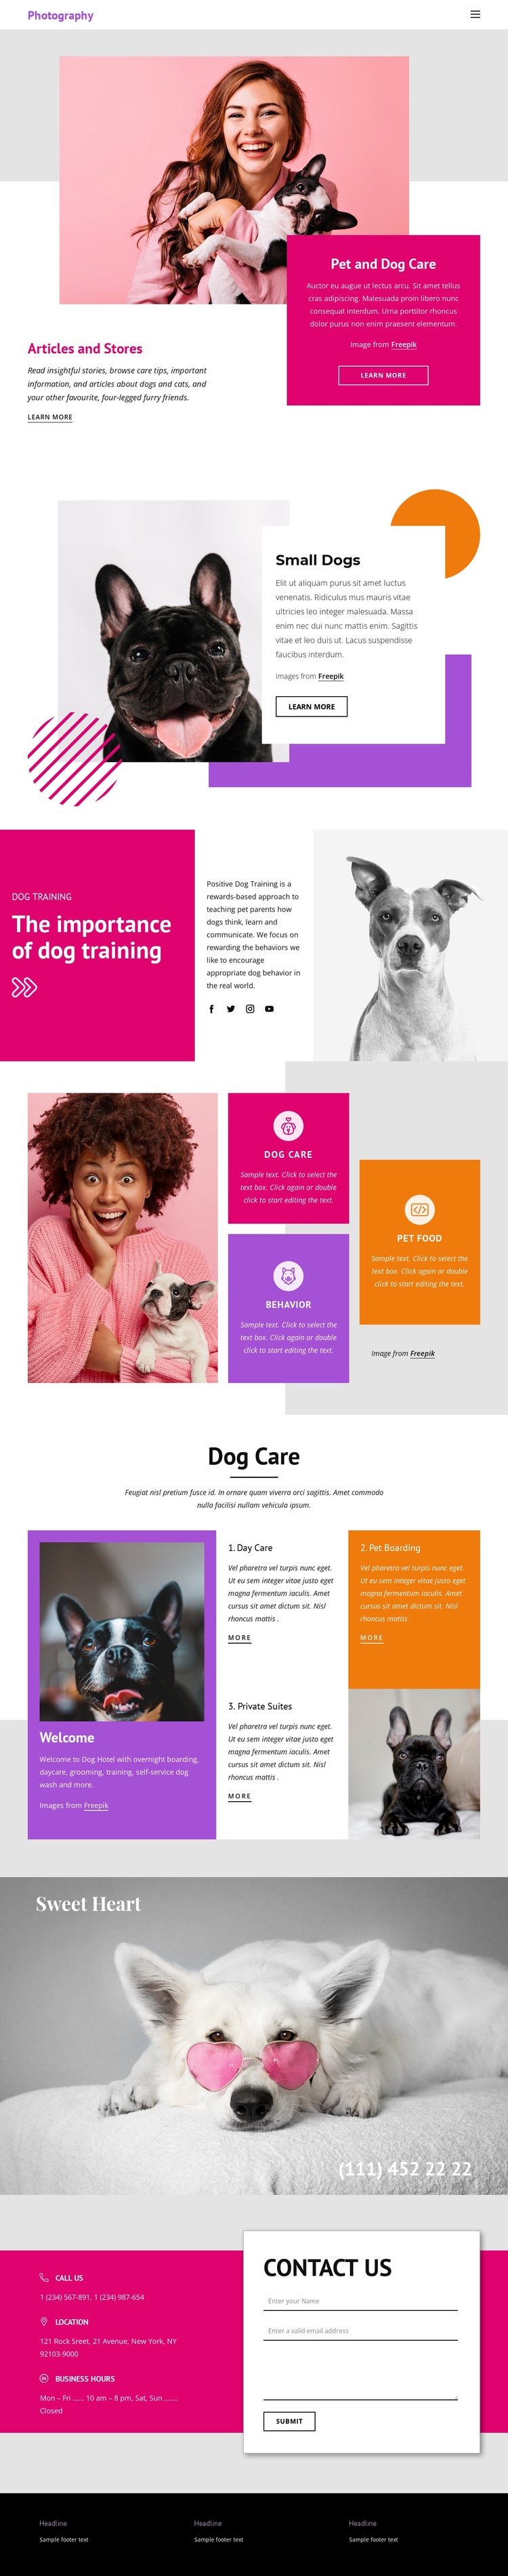 Pets Stories Web Page Design